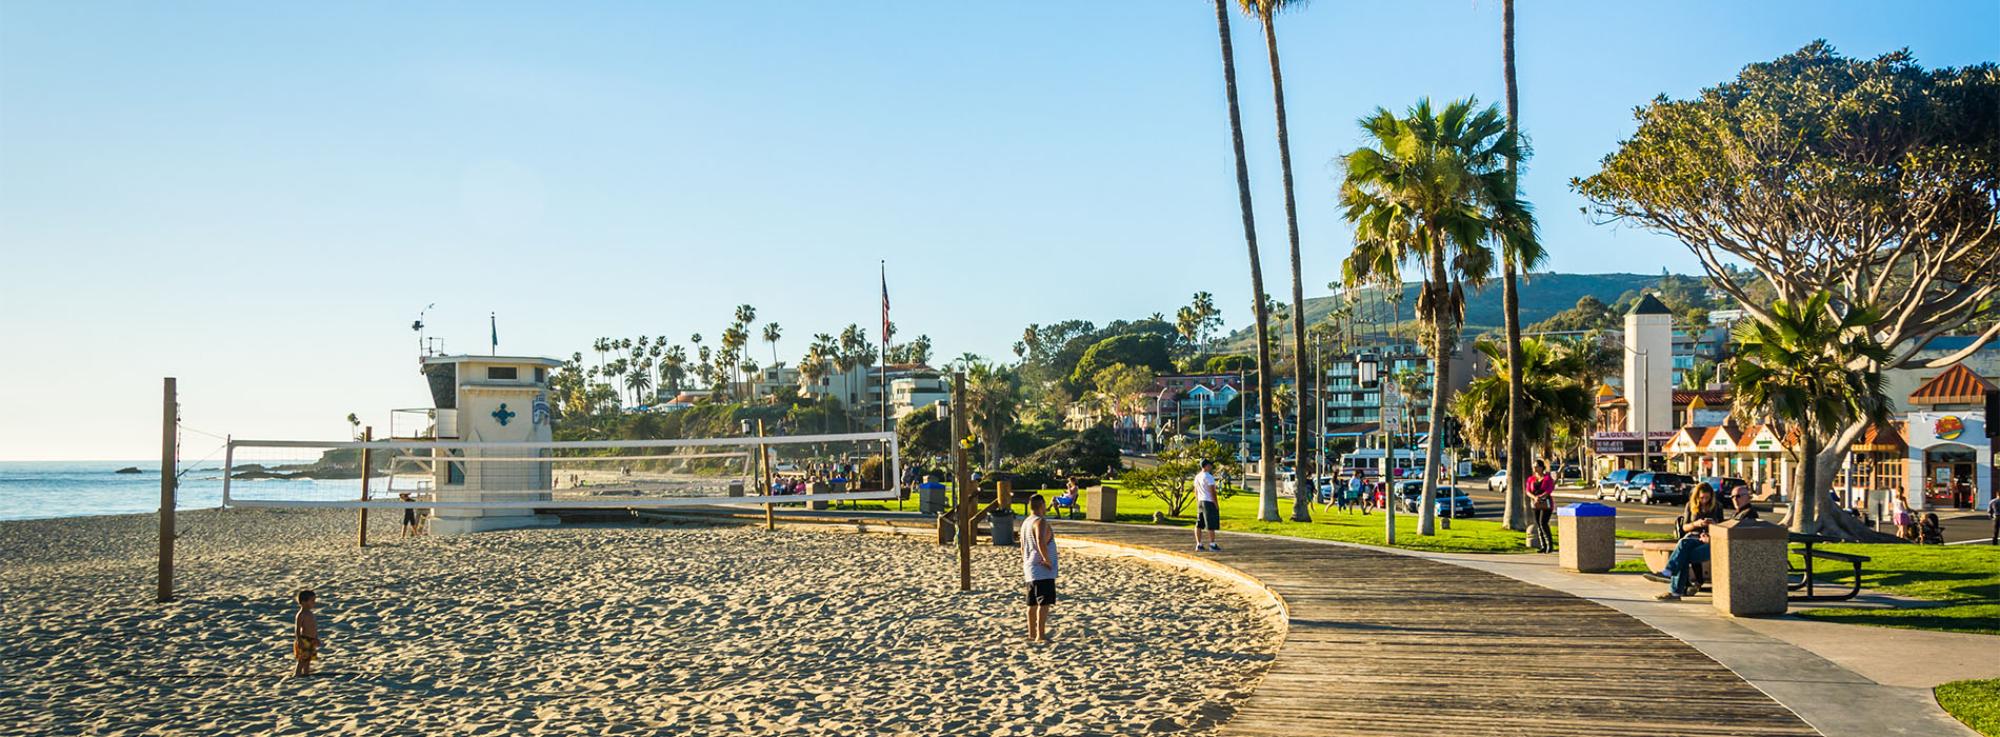 Laguna Beach skyline overview